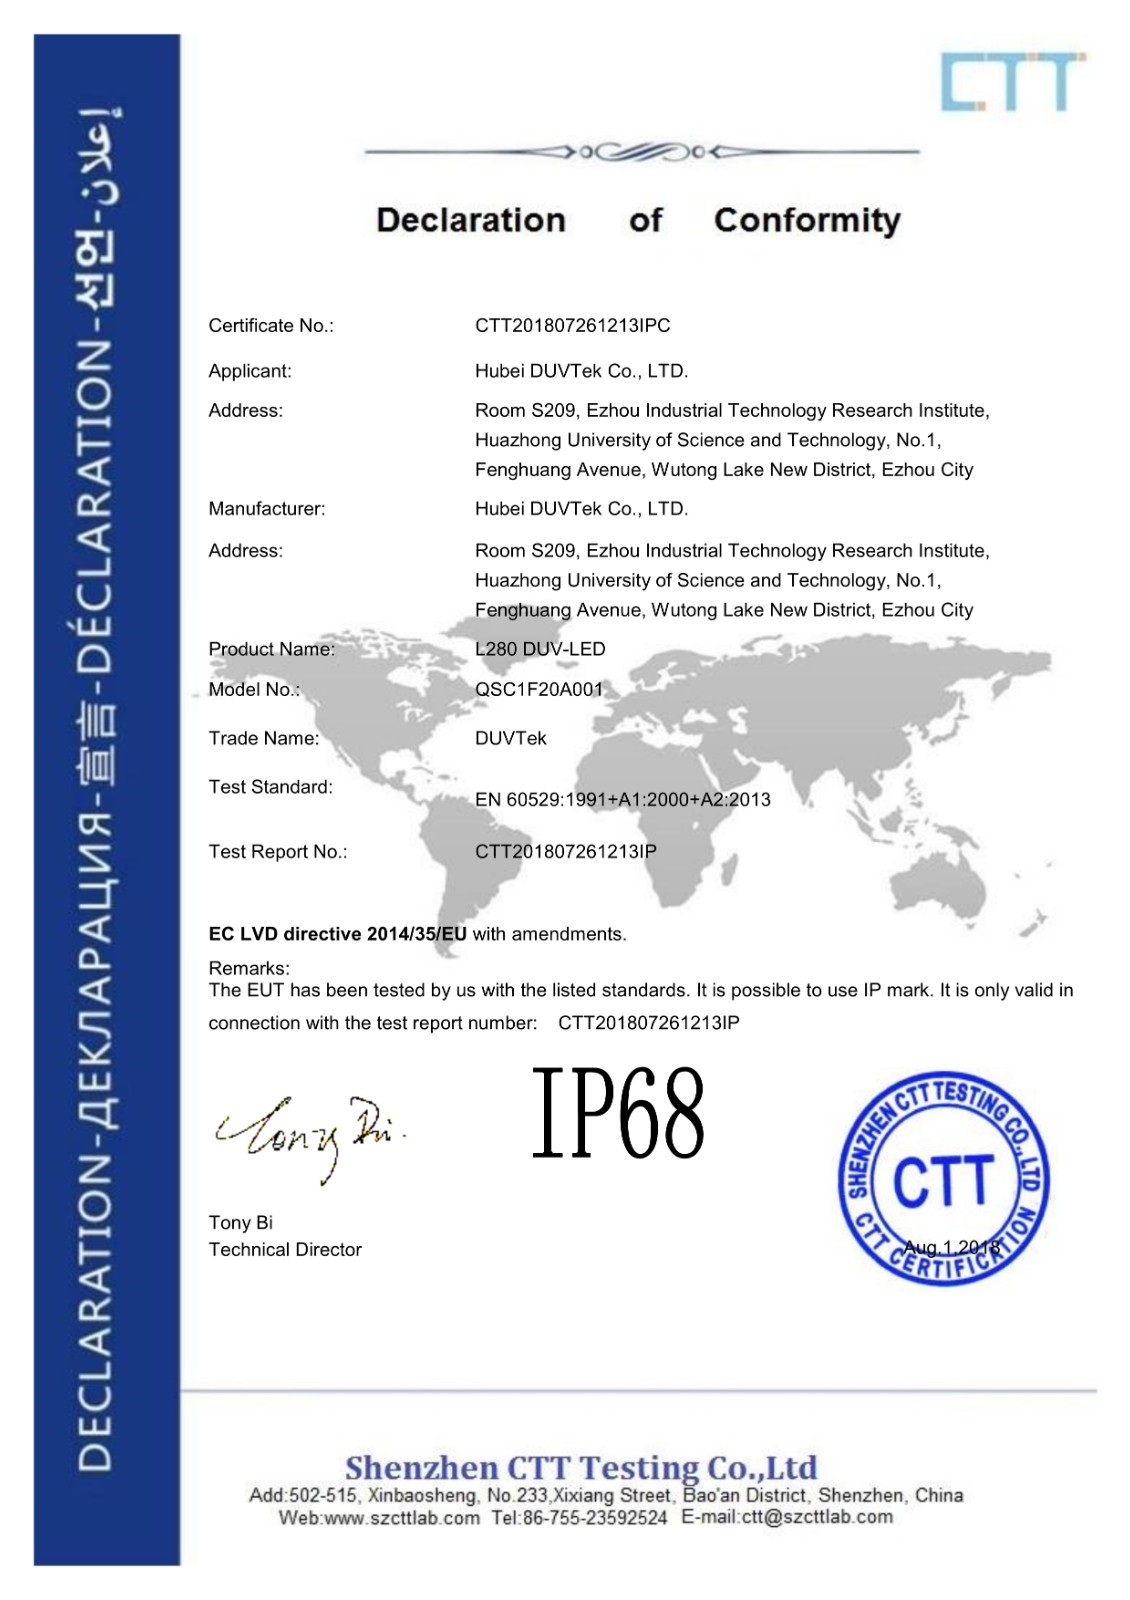 2-IP 68証明書-CTT 201807261213 IPC%U 00 A 0 certifeat_1.jpg